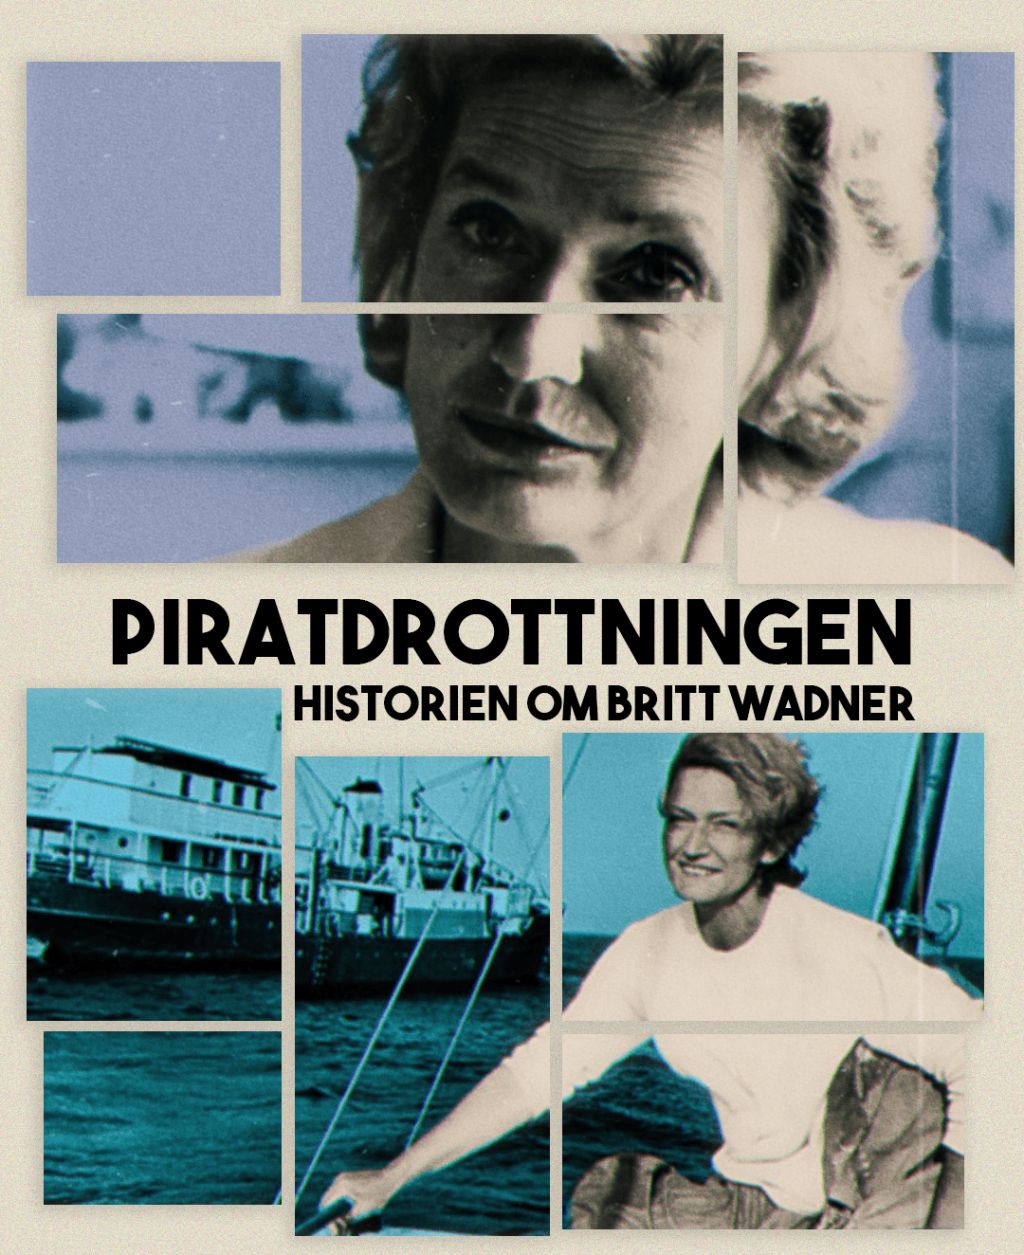 Piratdrottningen – berättelsen om Britt Wadner